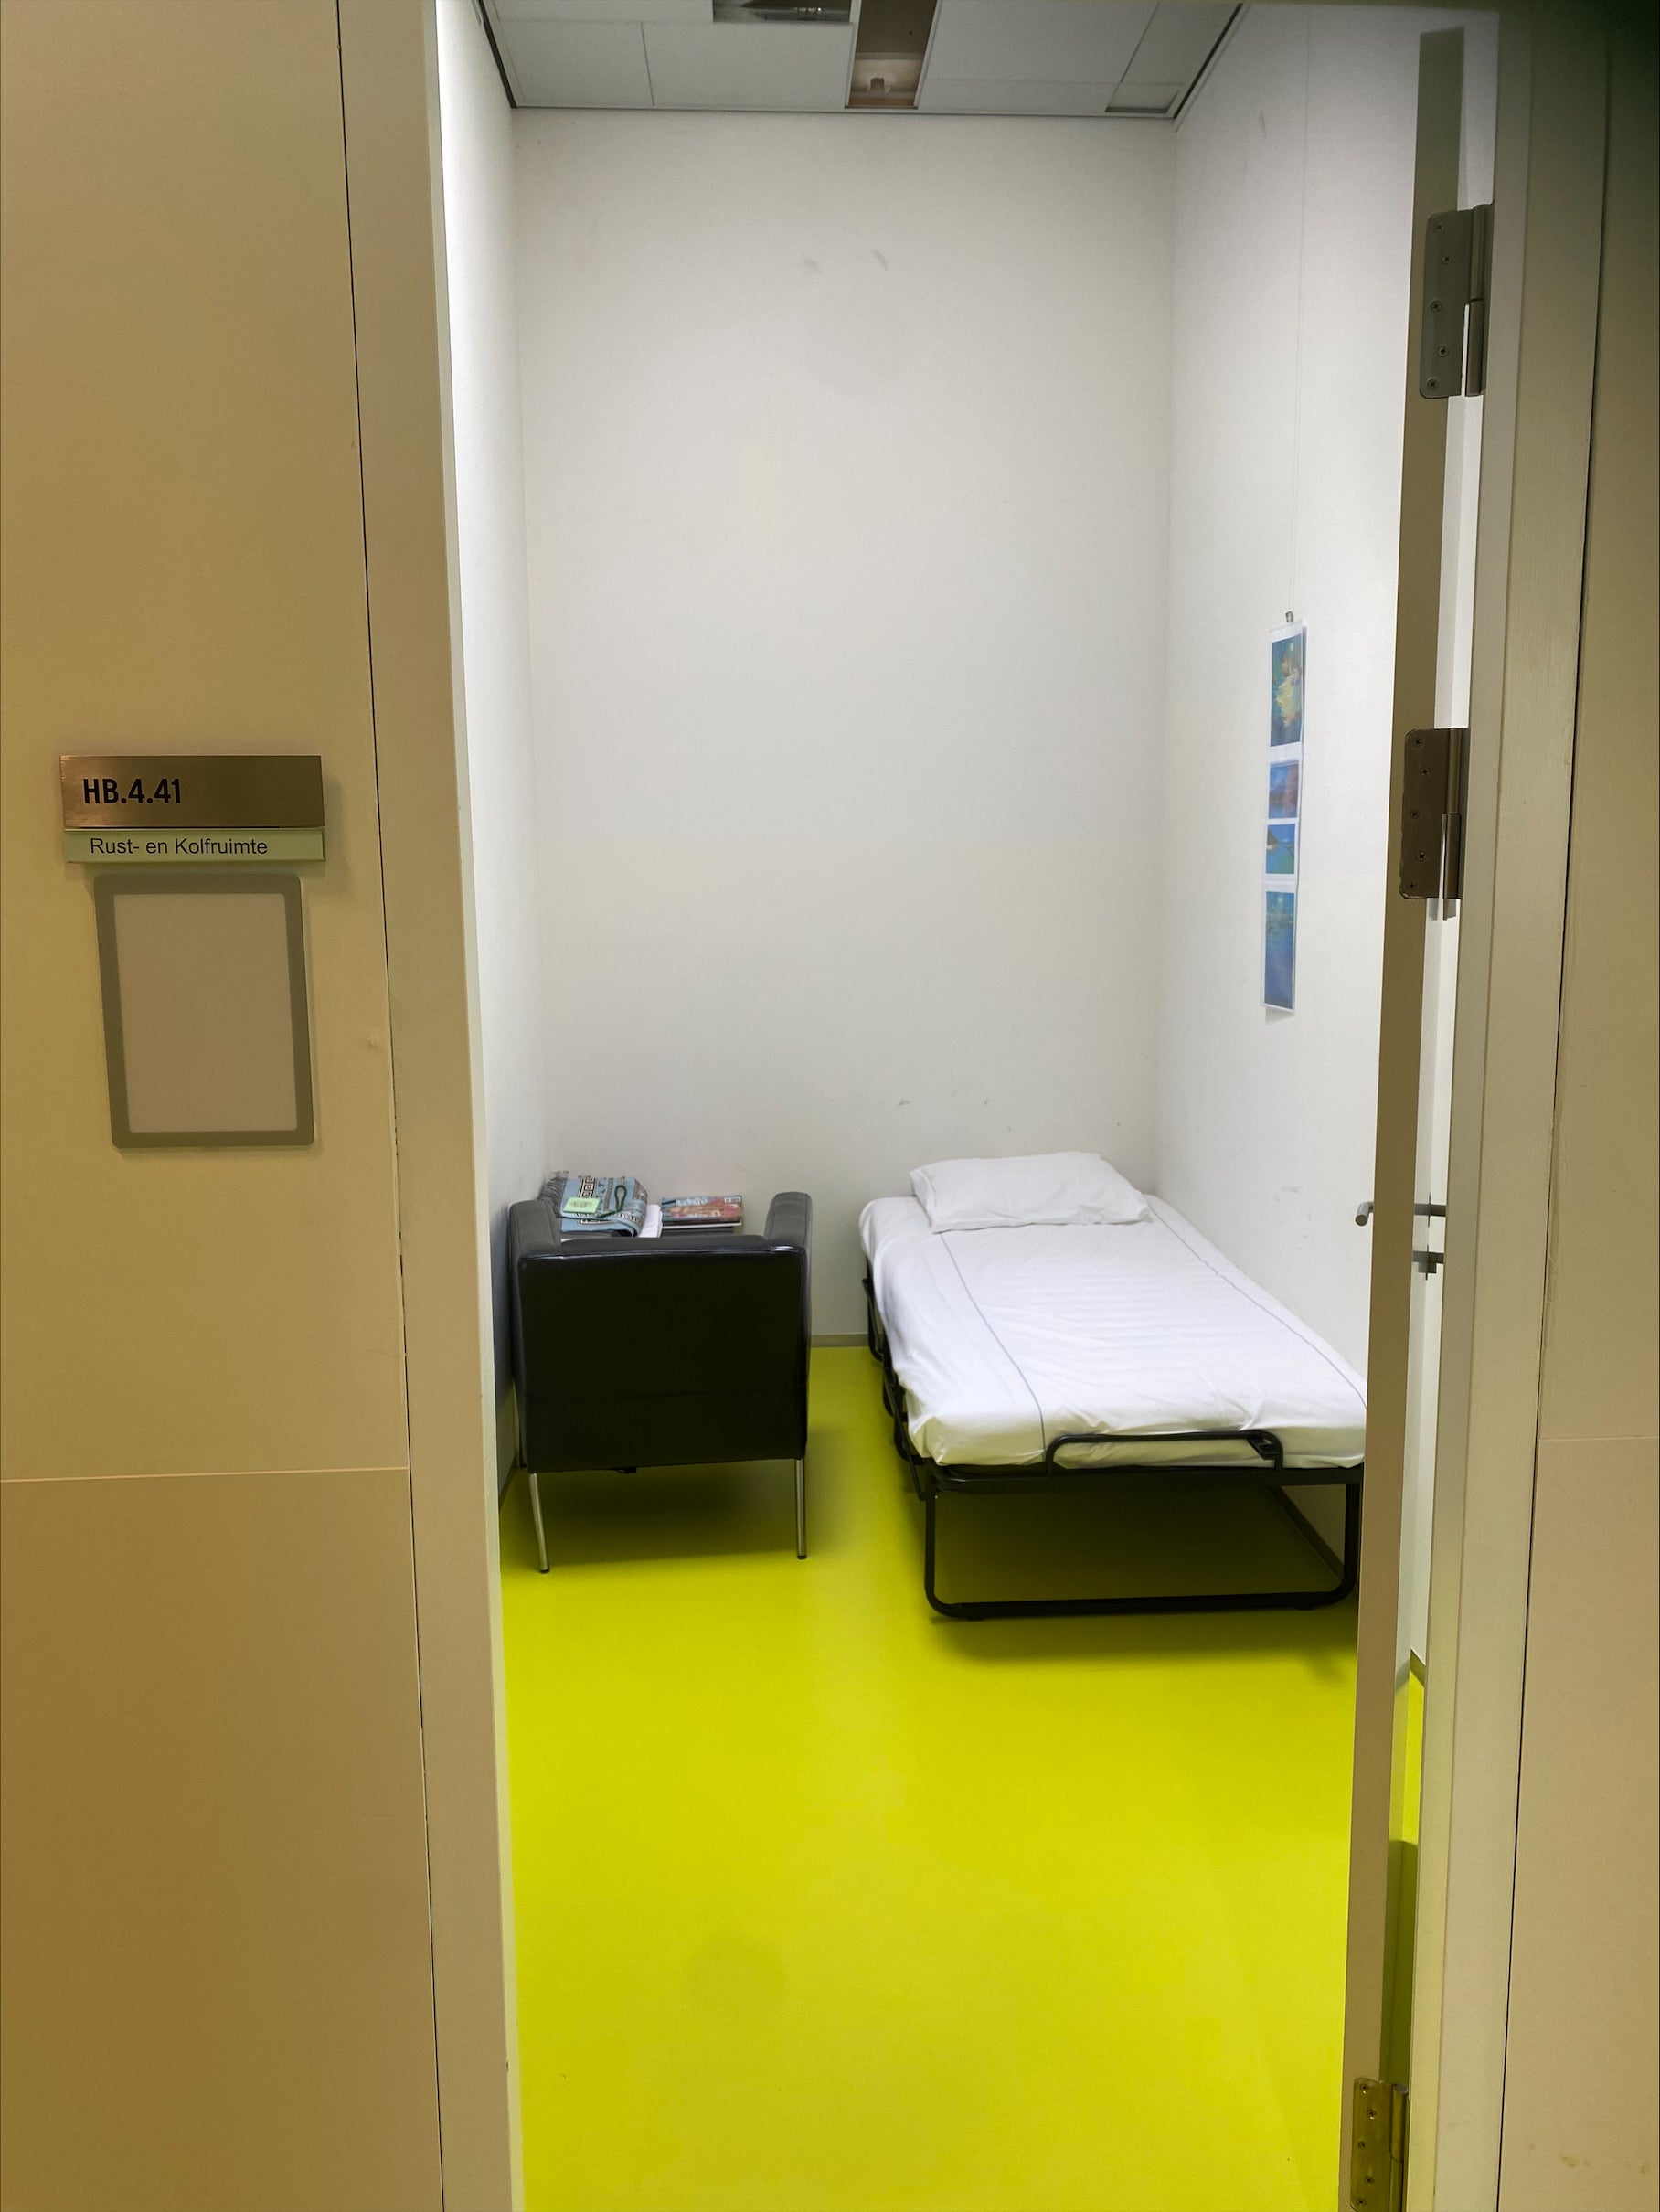 De rust- en kolfruimte in het Hijmans van den Berghgebouw van het UMC Utrecht heeft een bed en een zwart kastje.